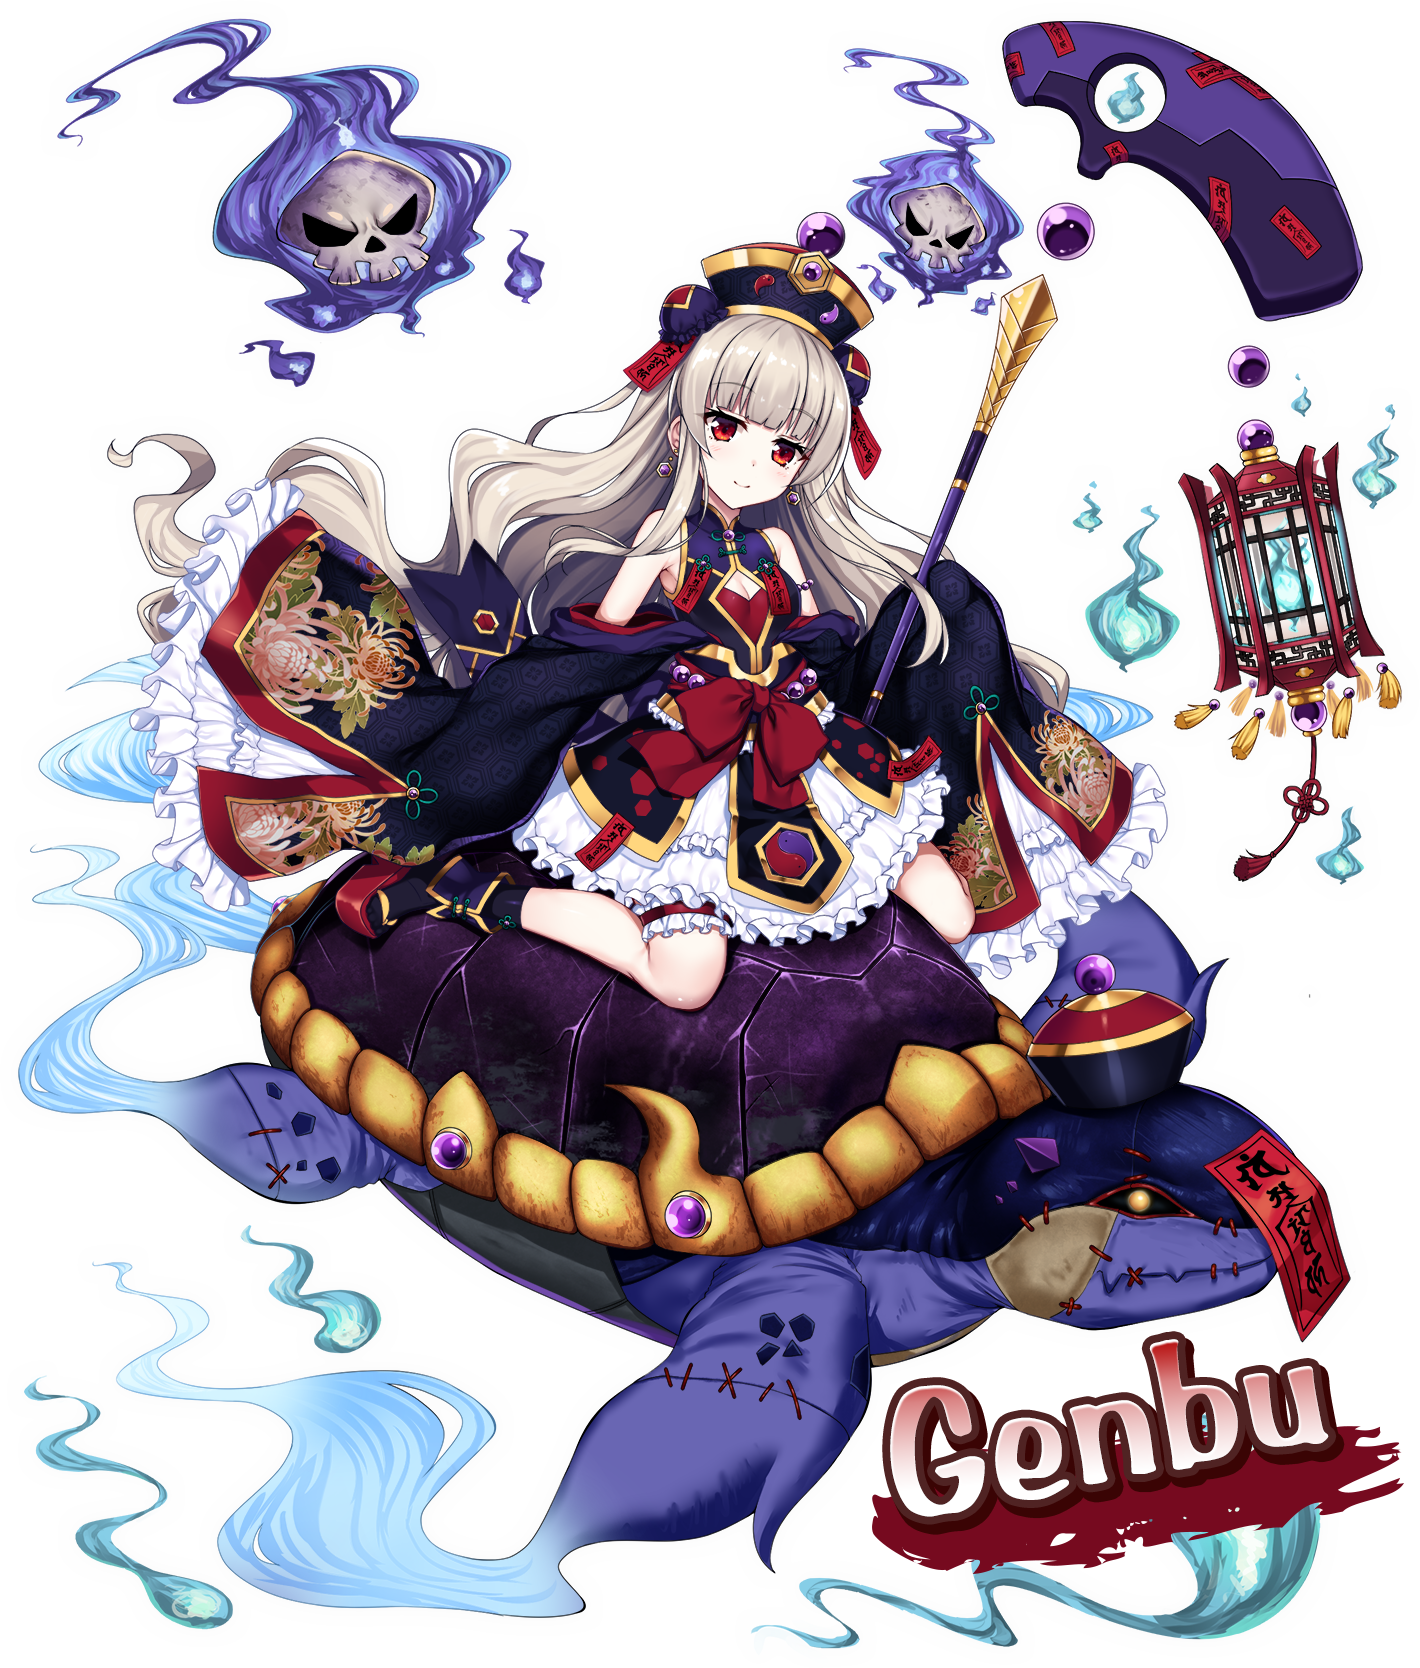 Genbu